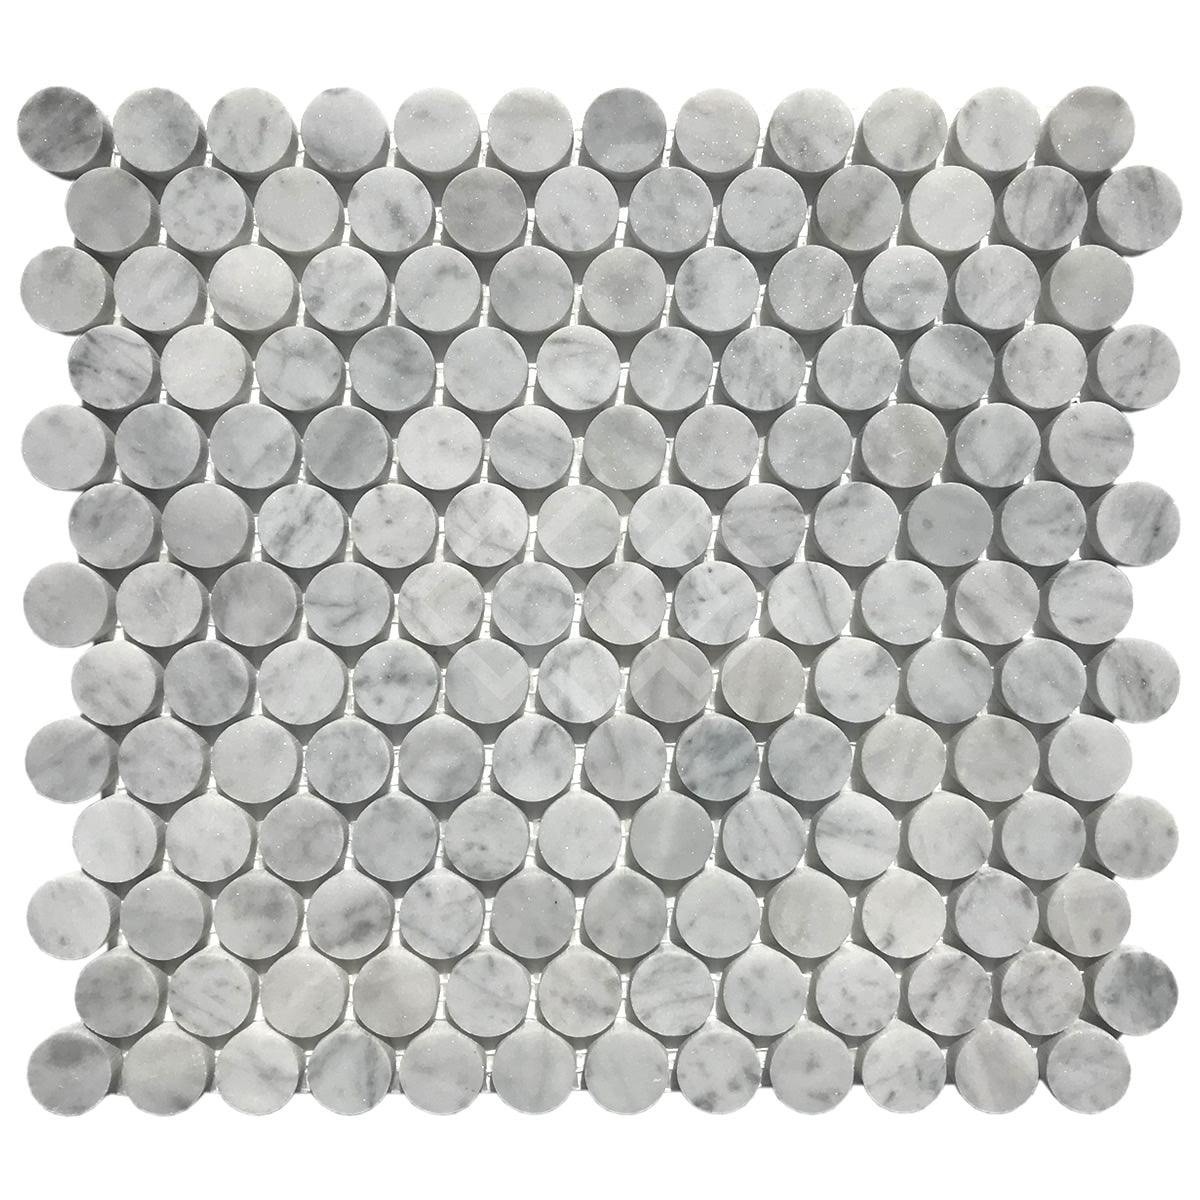 Enzo Tile - Carrara White Marble Mosaic Tile - Penny Round